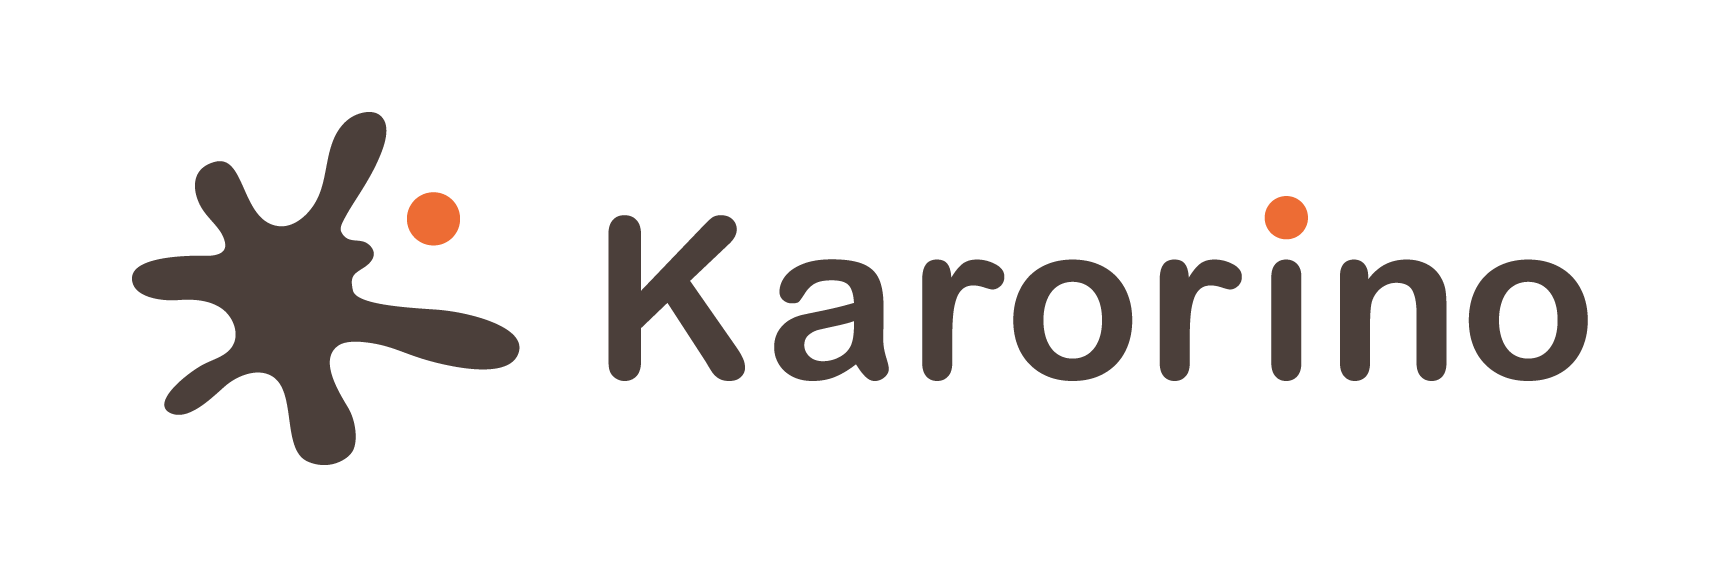 Karorino株式会社